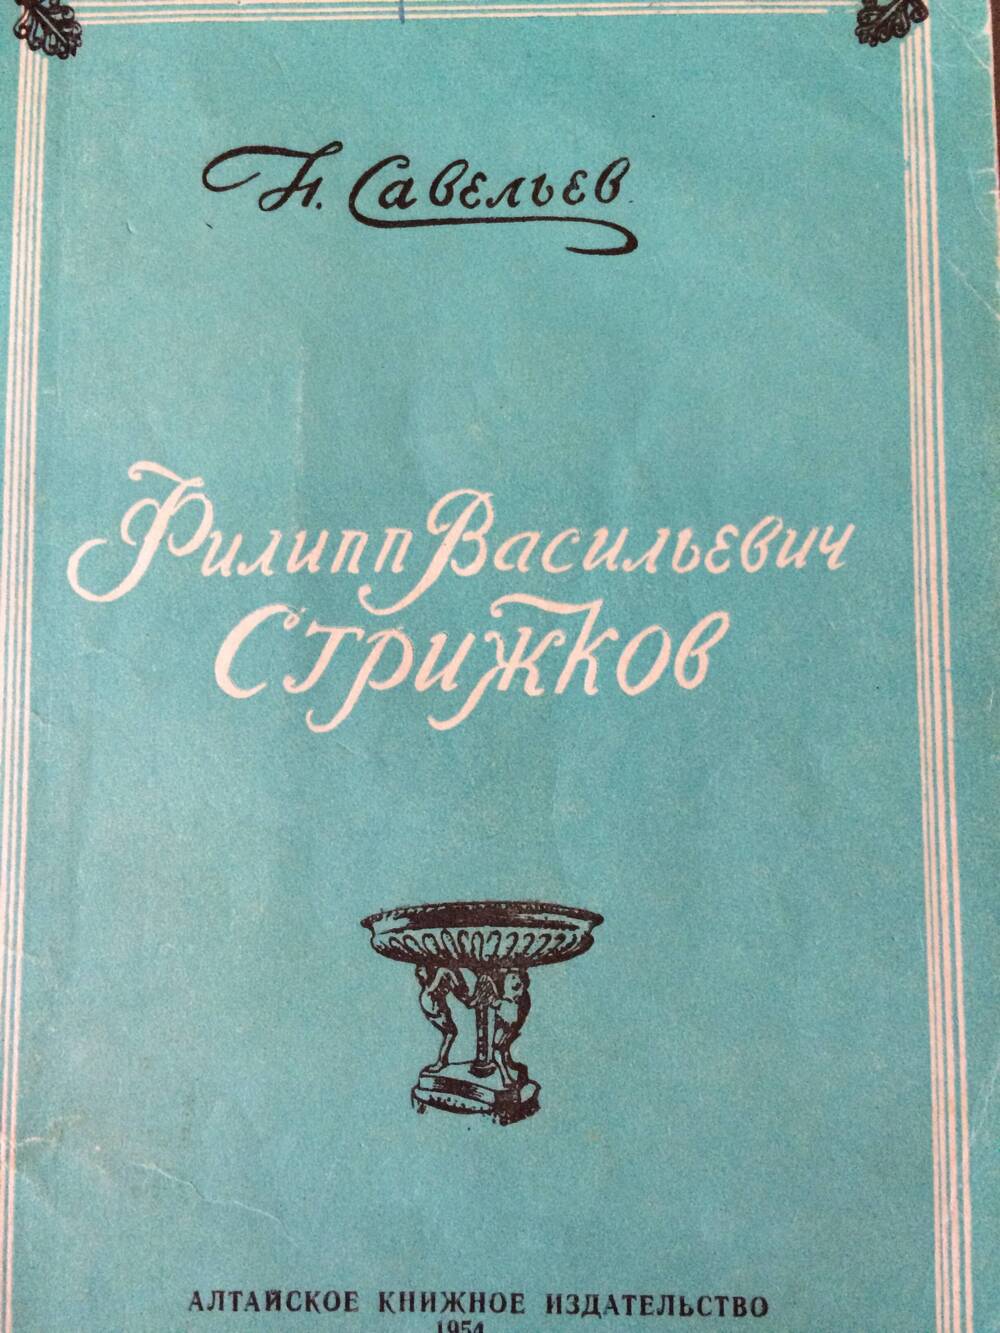 Книга. Савельев Н. Филипп Васильевич Стрижков.Барнаул, 1954 год.